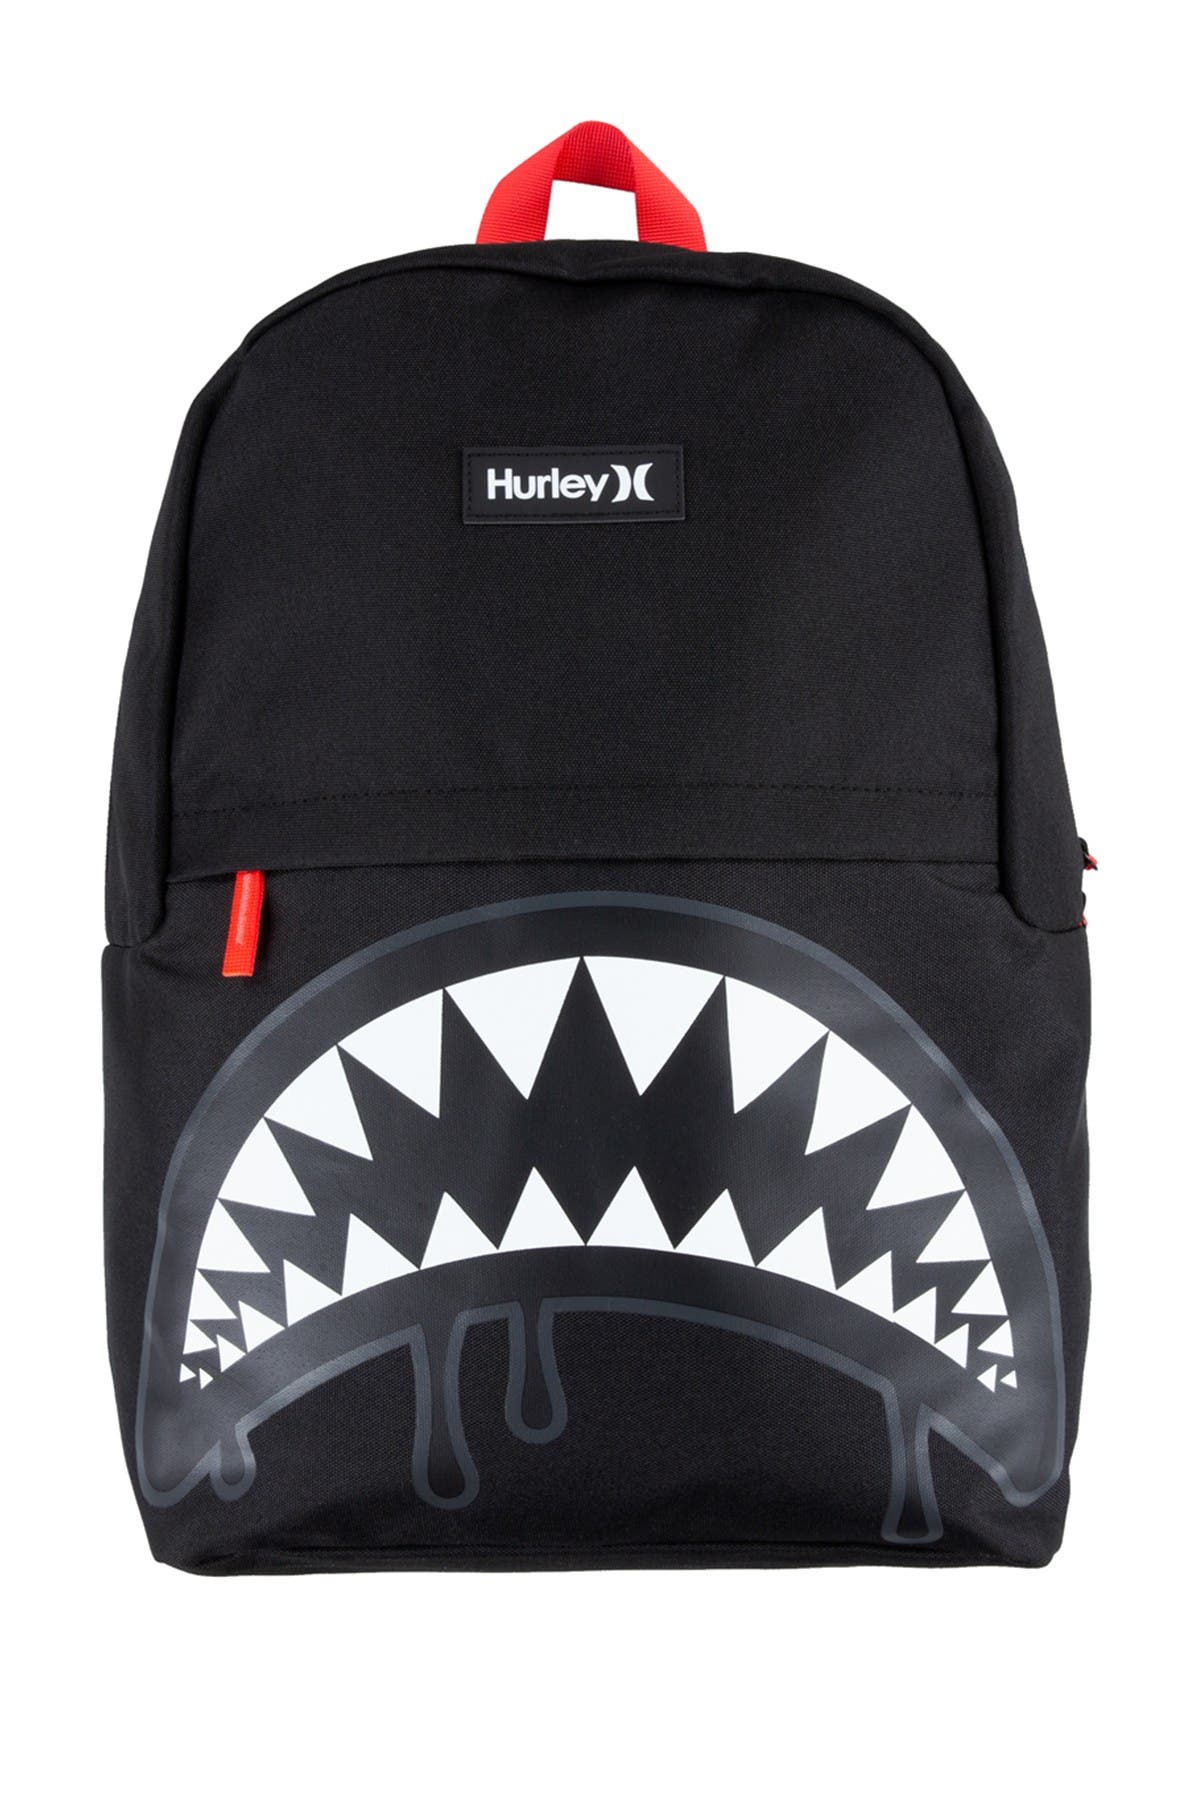 Hurley Kids' Shark Bite Backpack In Black